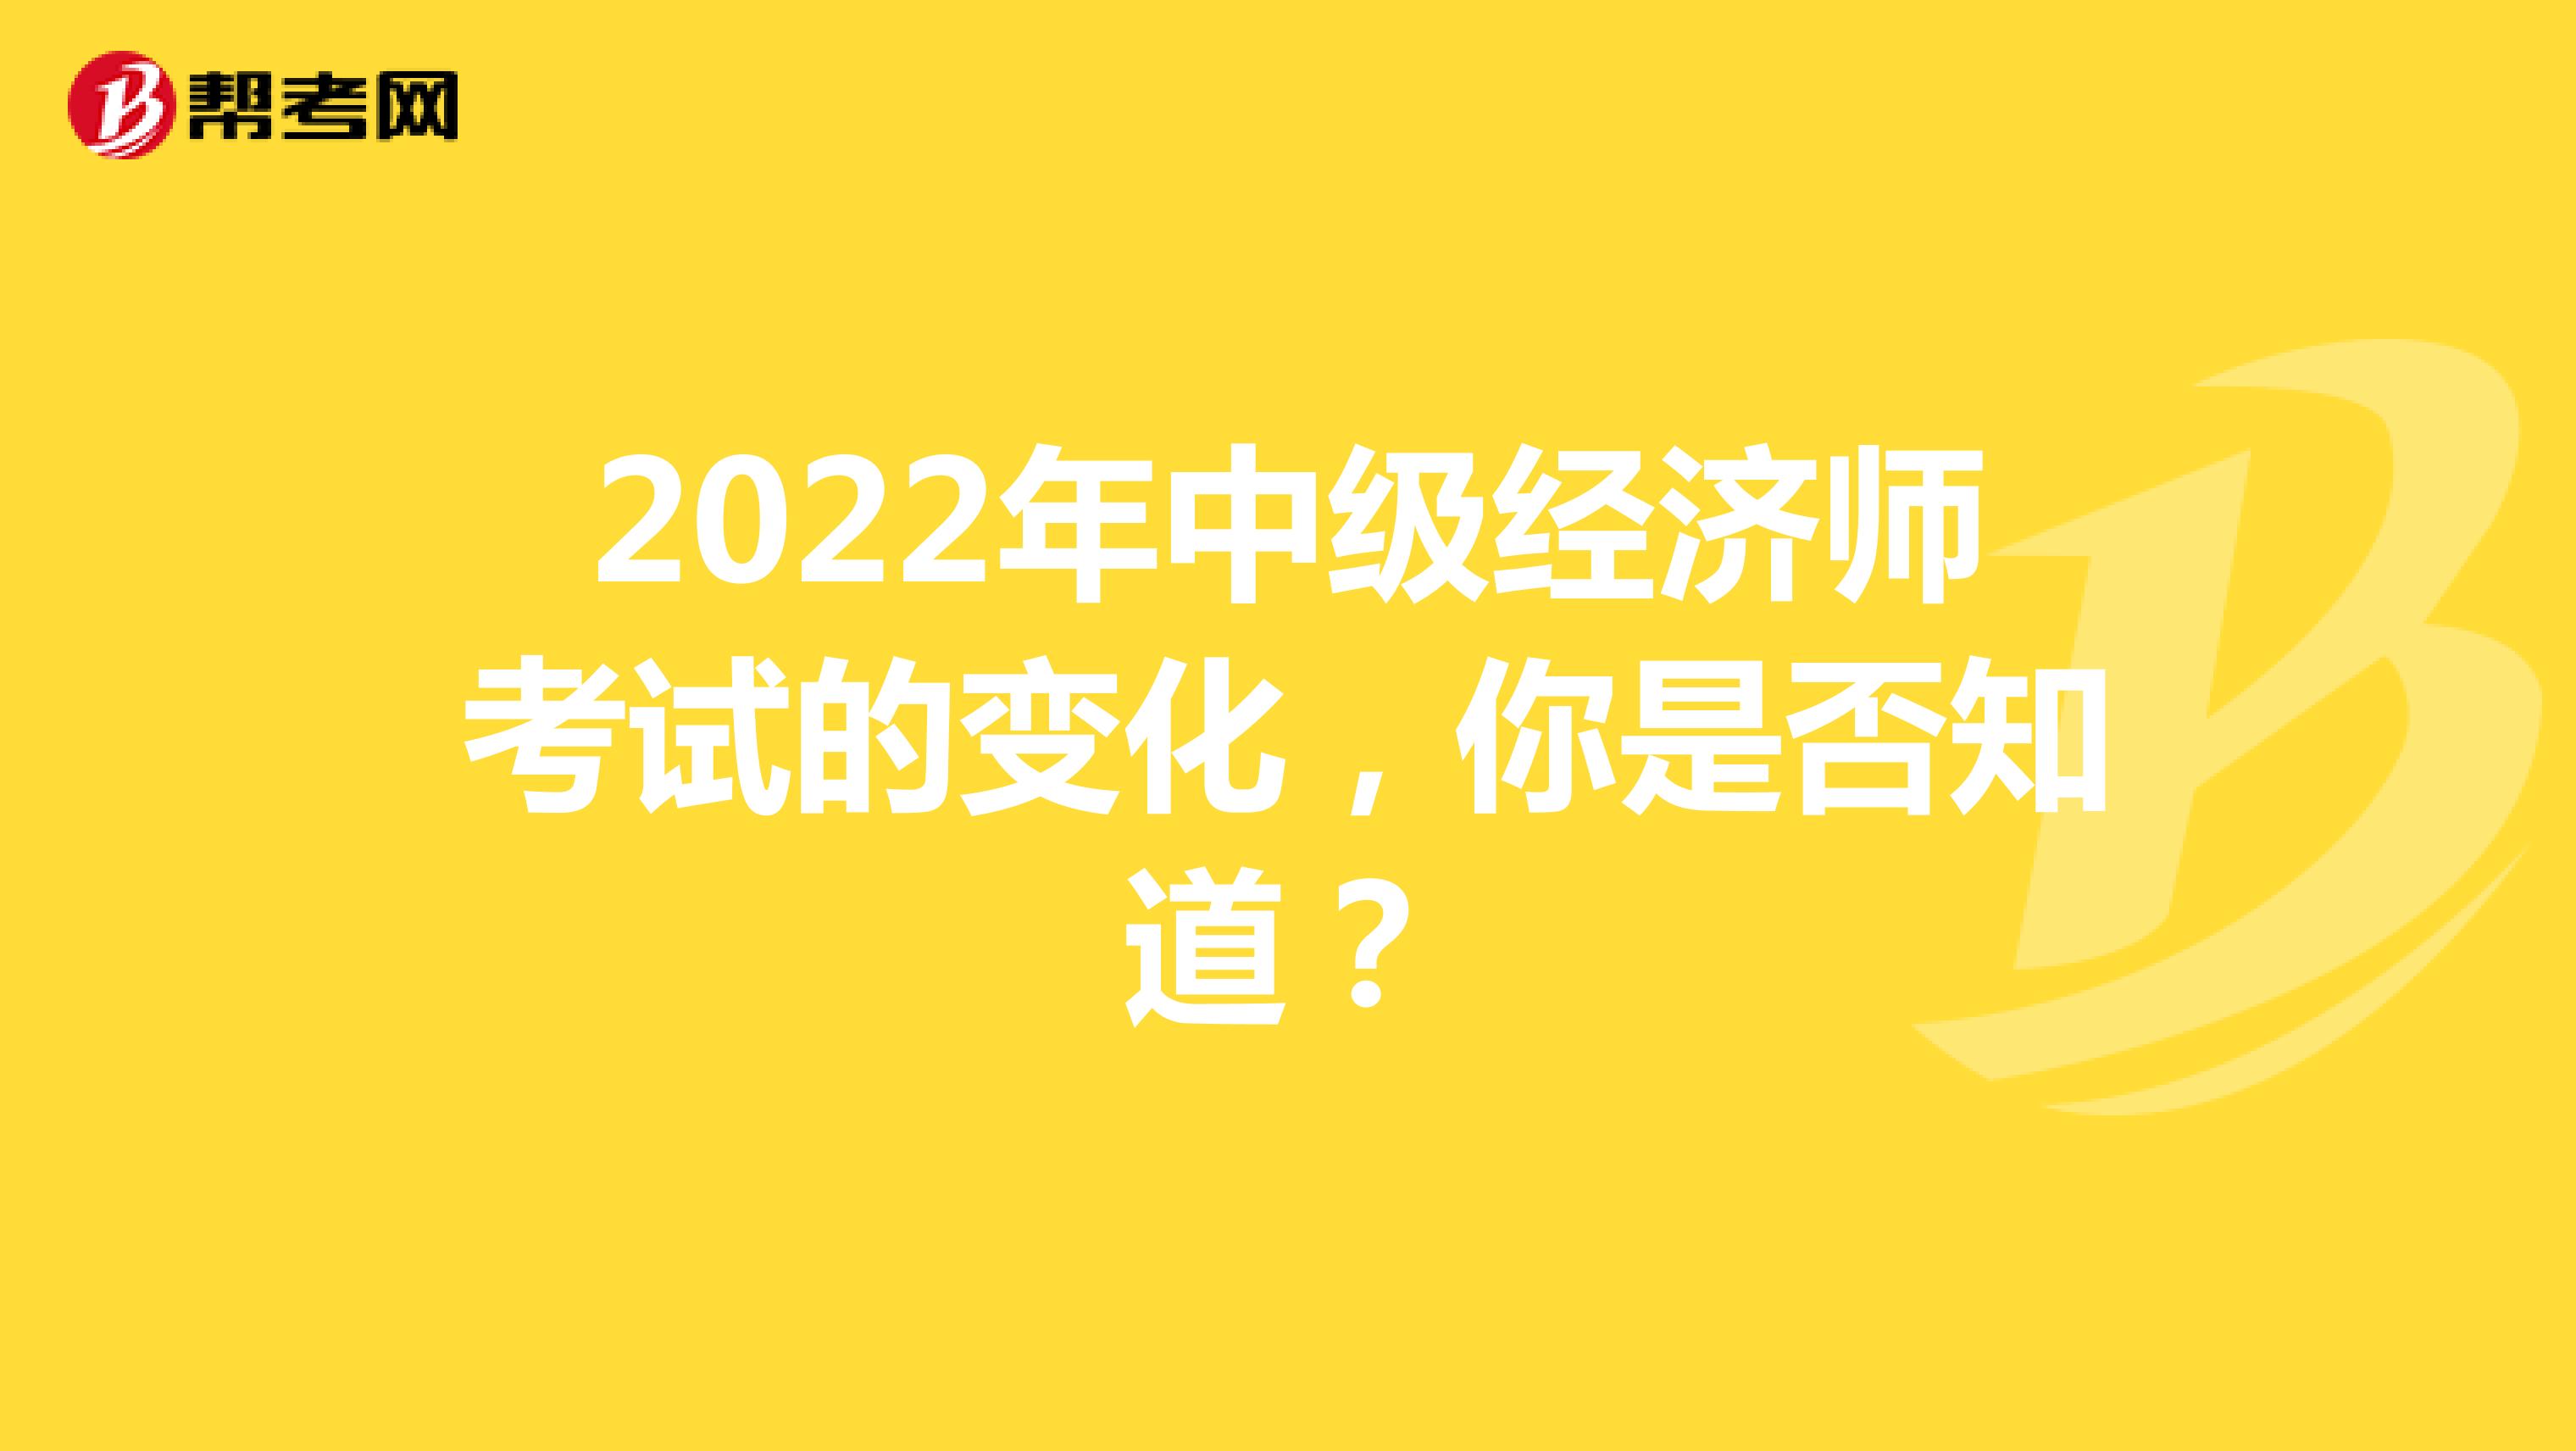 2022年中级经济师考试的变化，你是否知道？